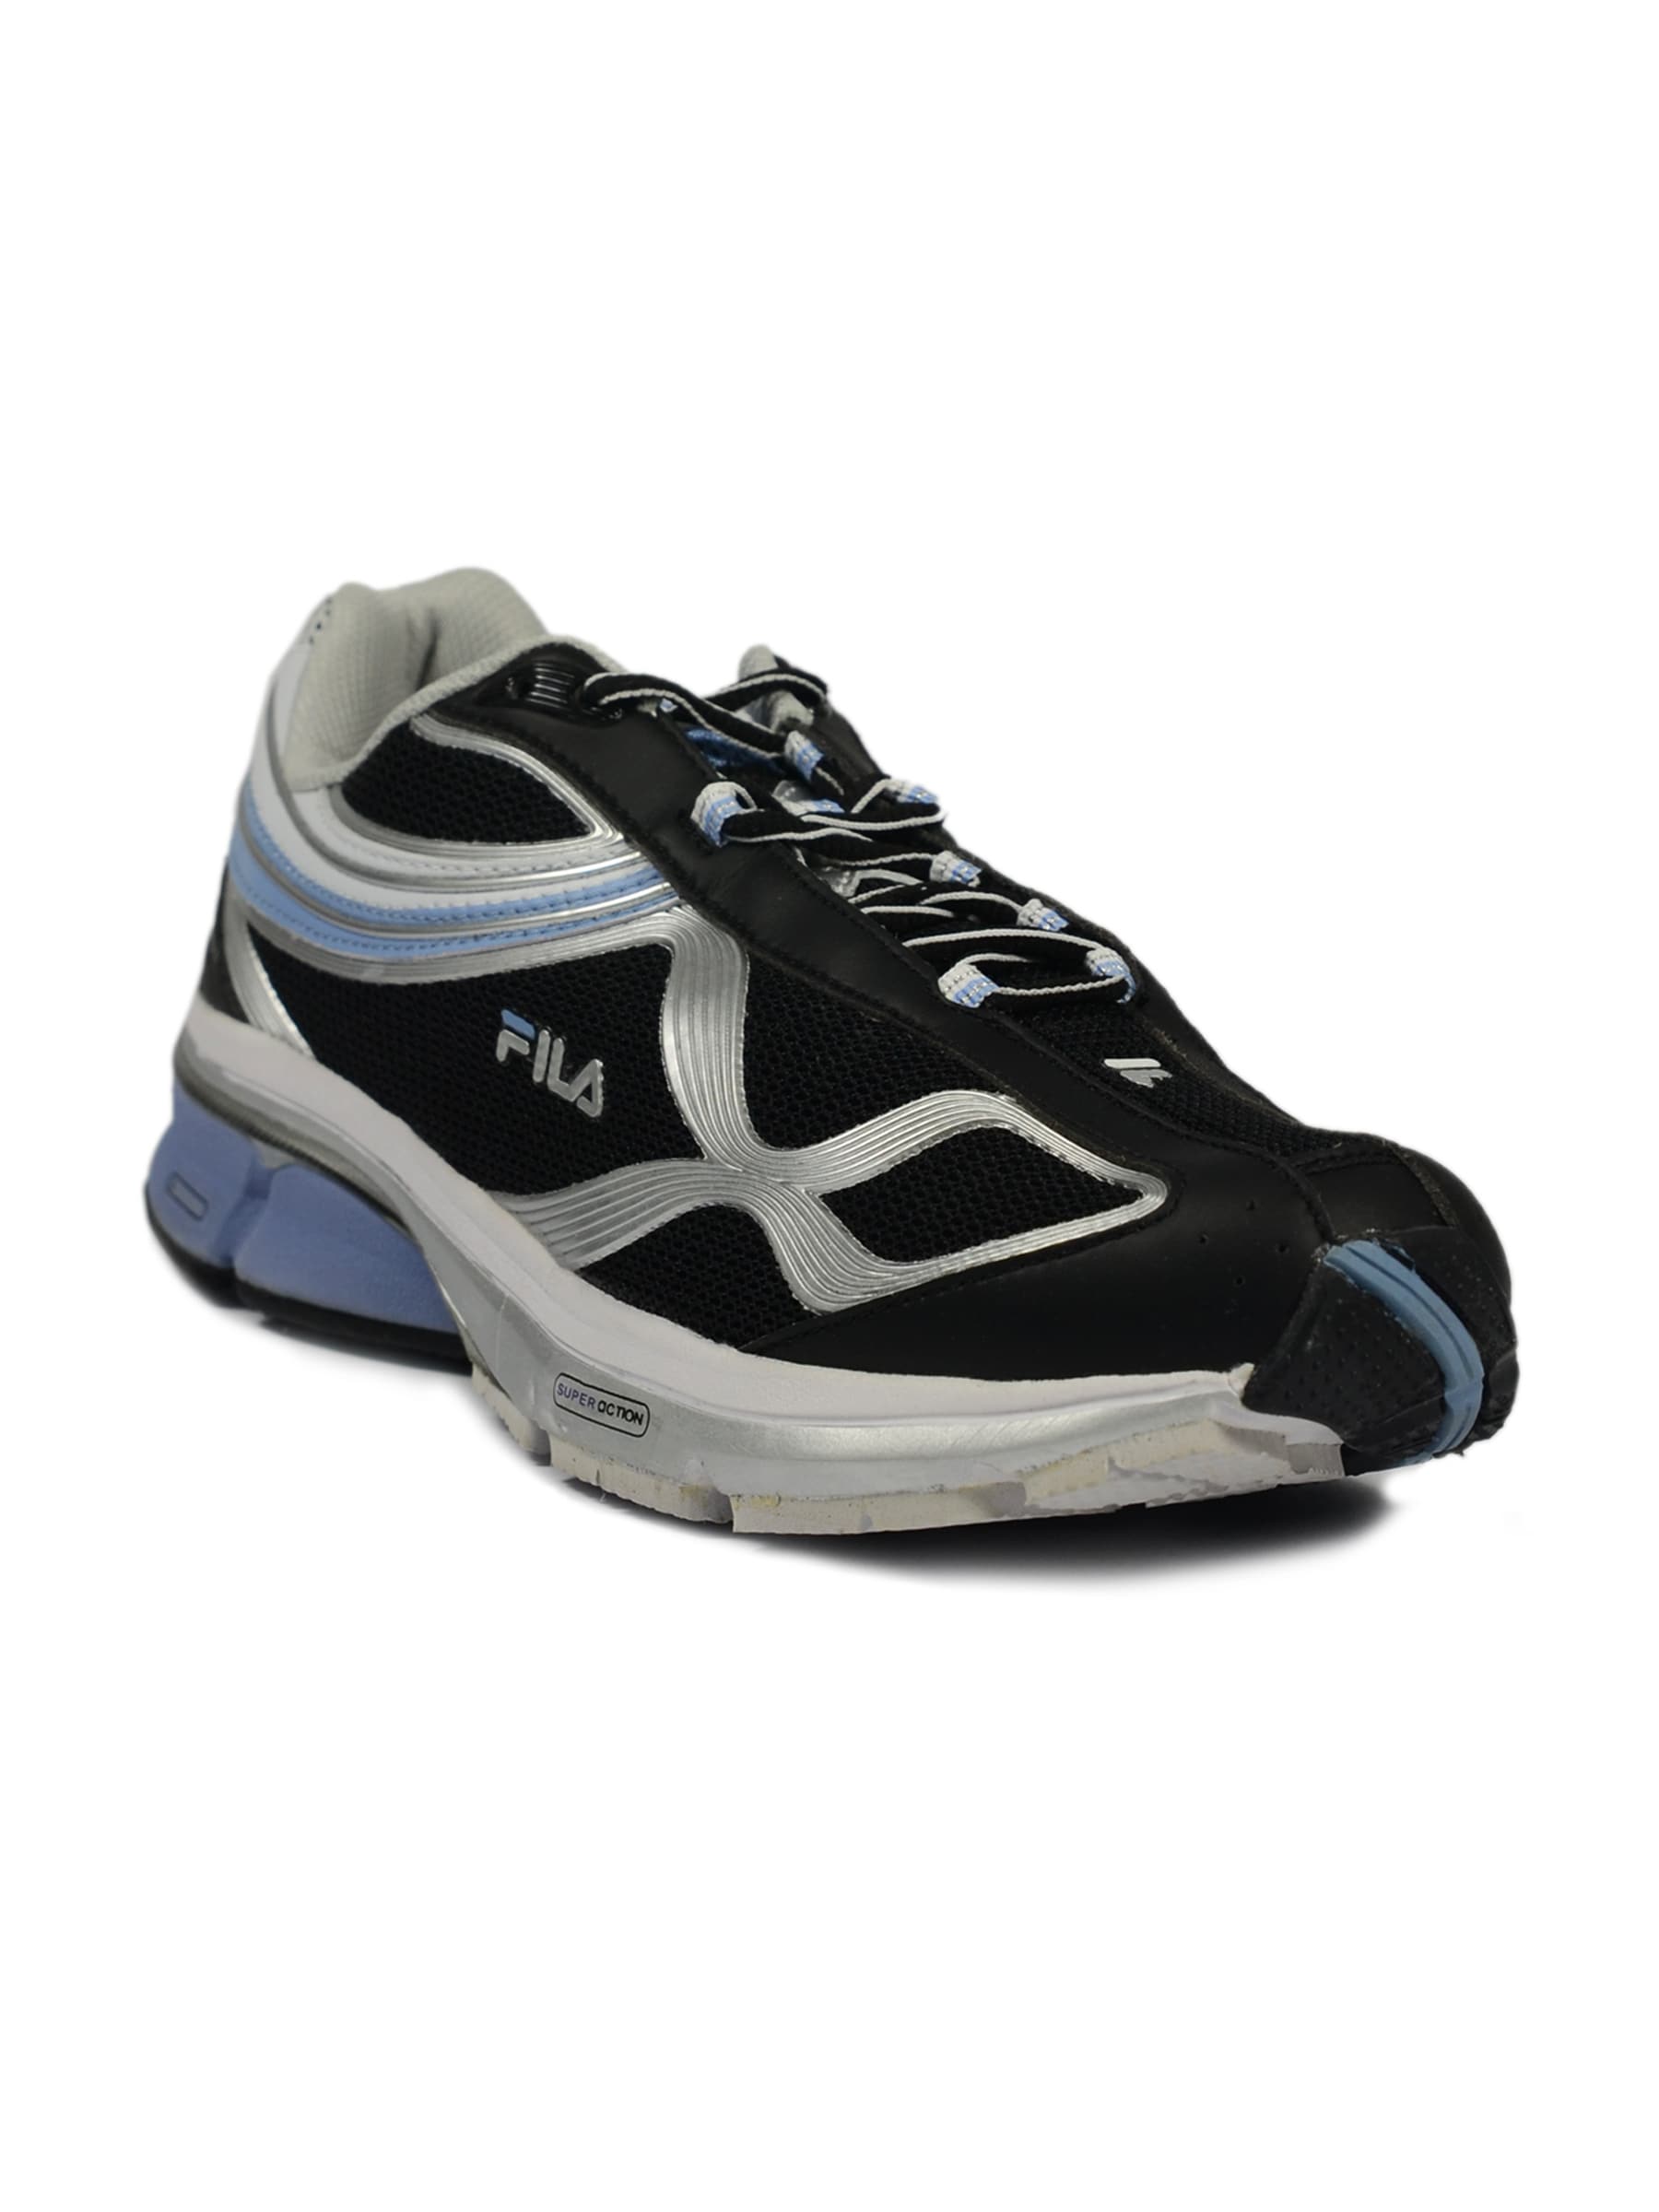 Fila Men's Dna Tech Blue Black Shoe